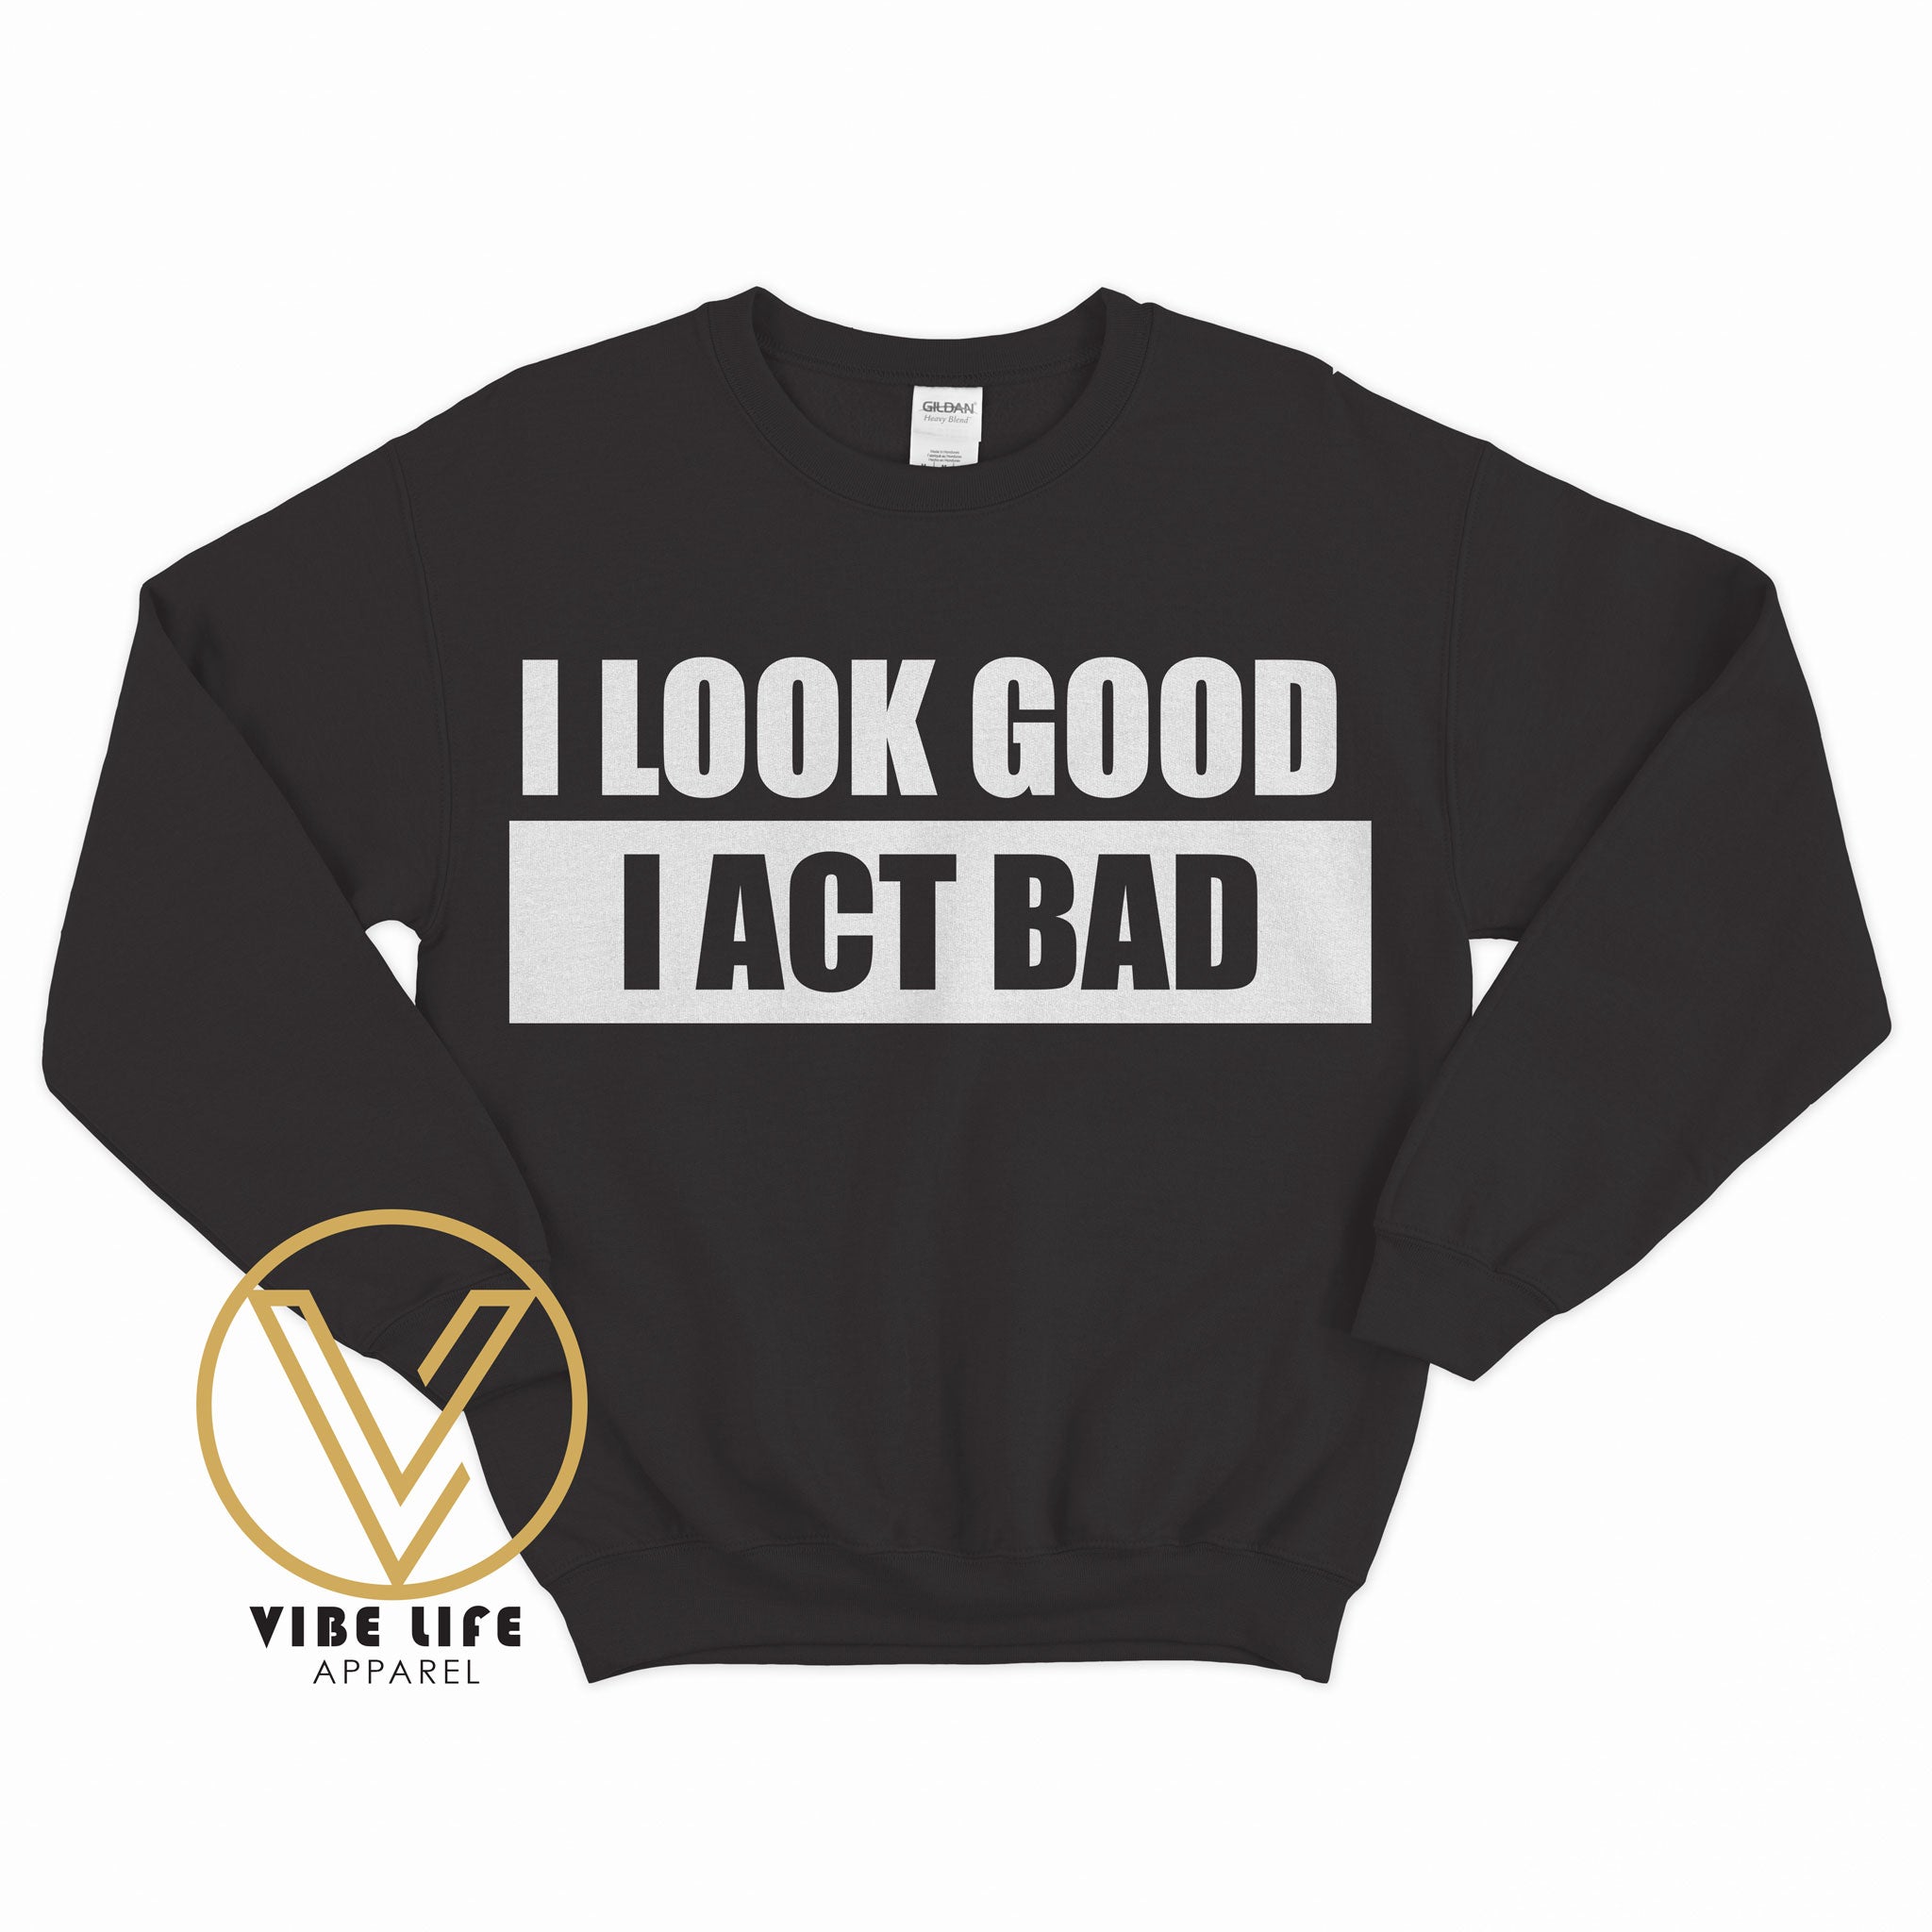 I Look Good, I Act Bad - Sweatshirt